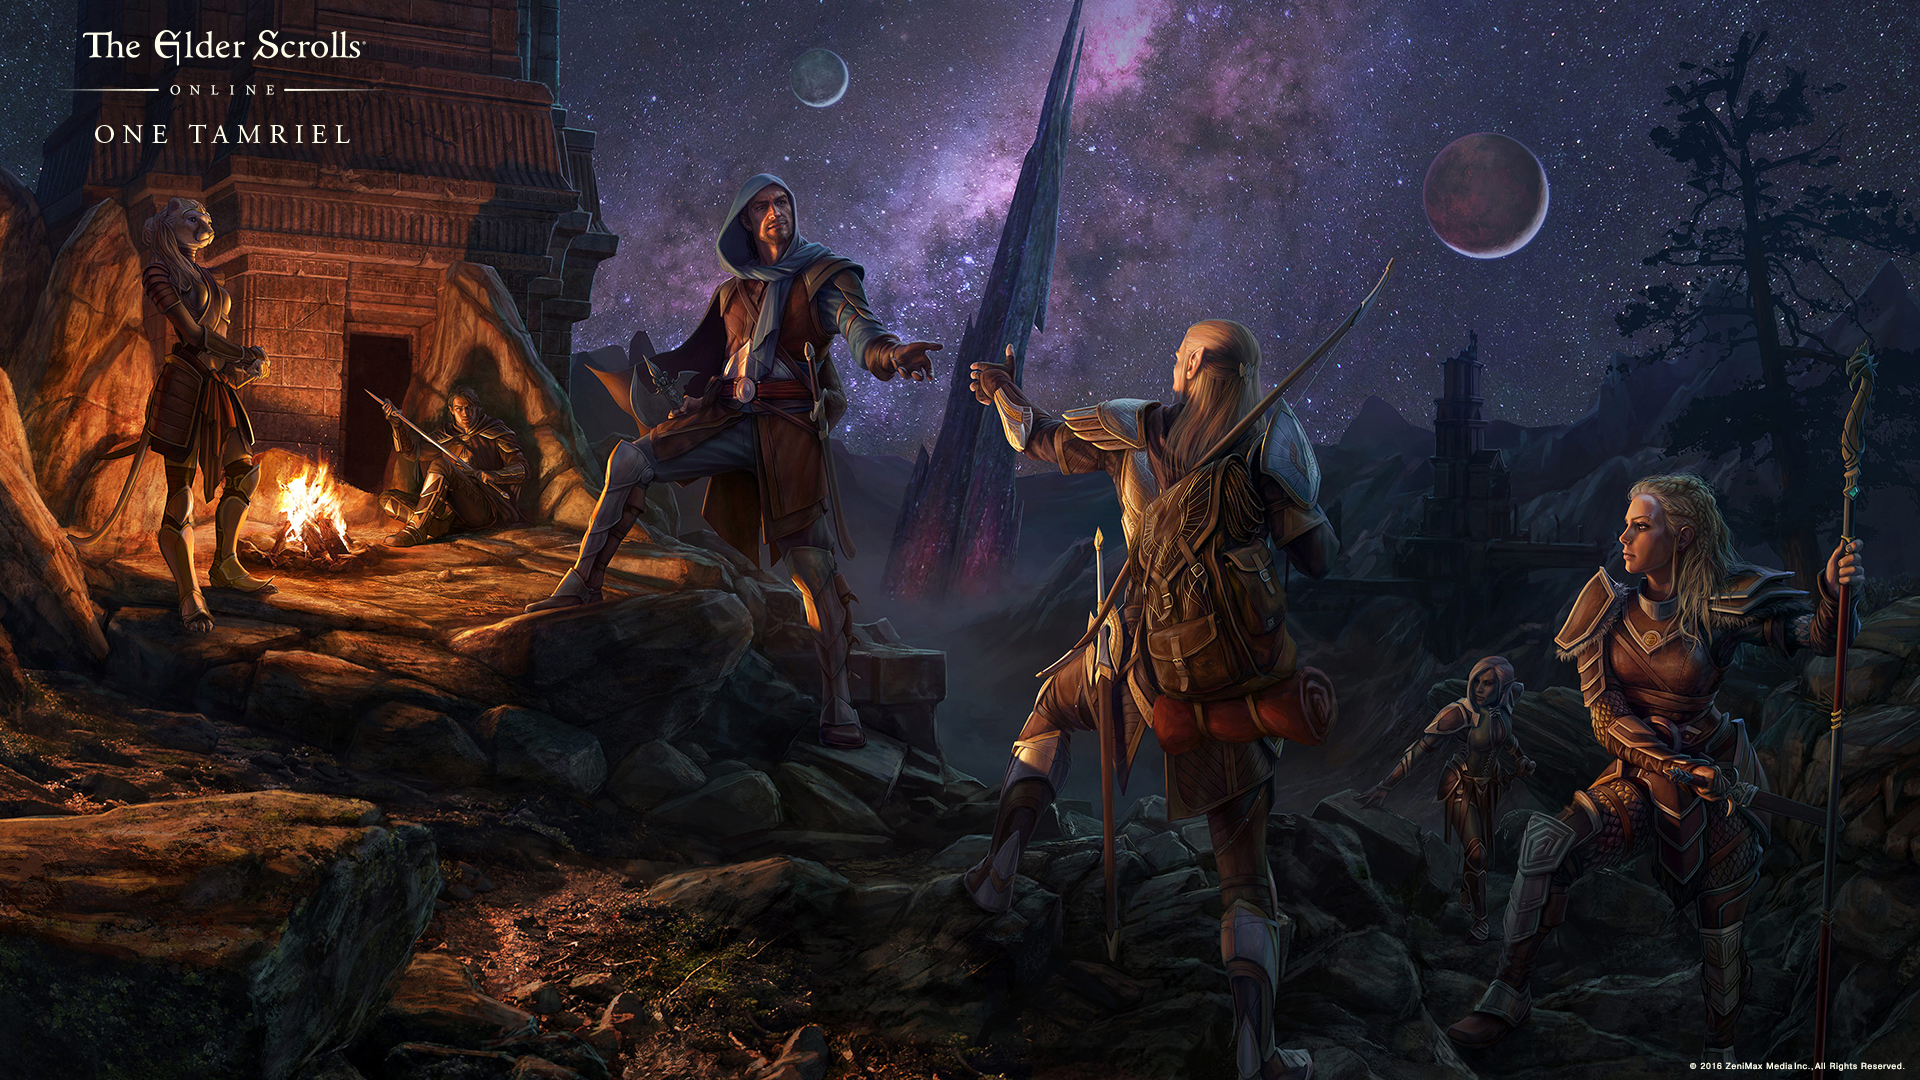 The Elder Scrolls Online: One Tamriel ist live, mehr Freiheiten für die Spieler!